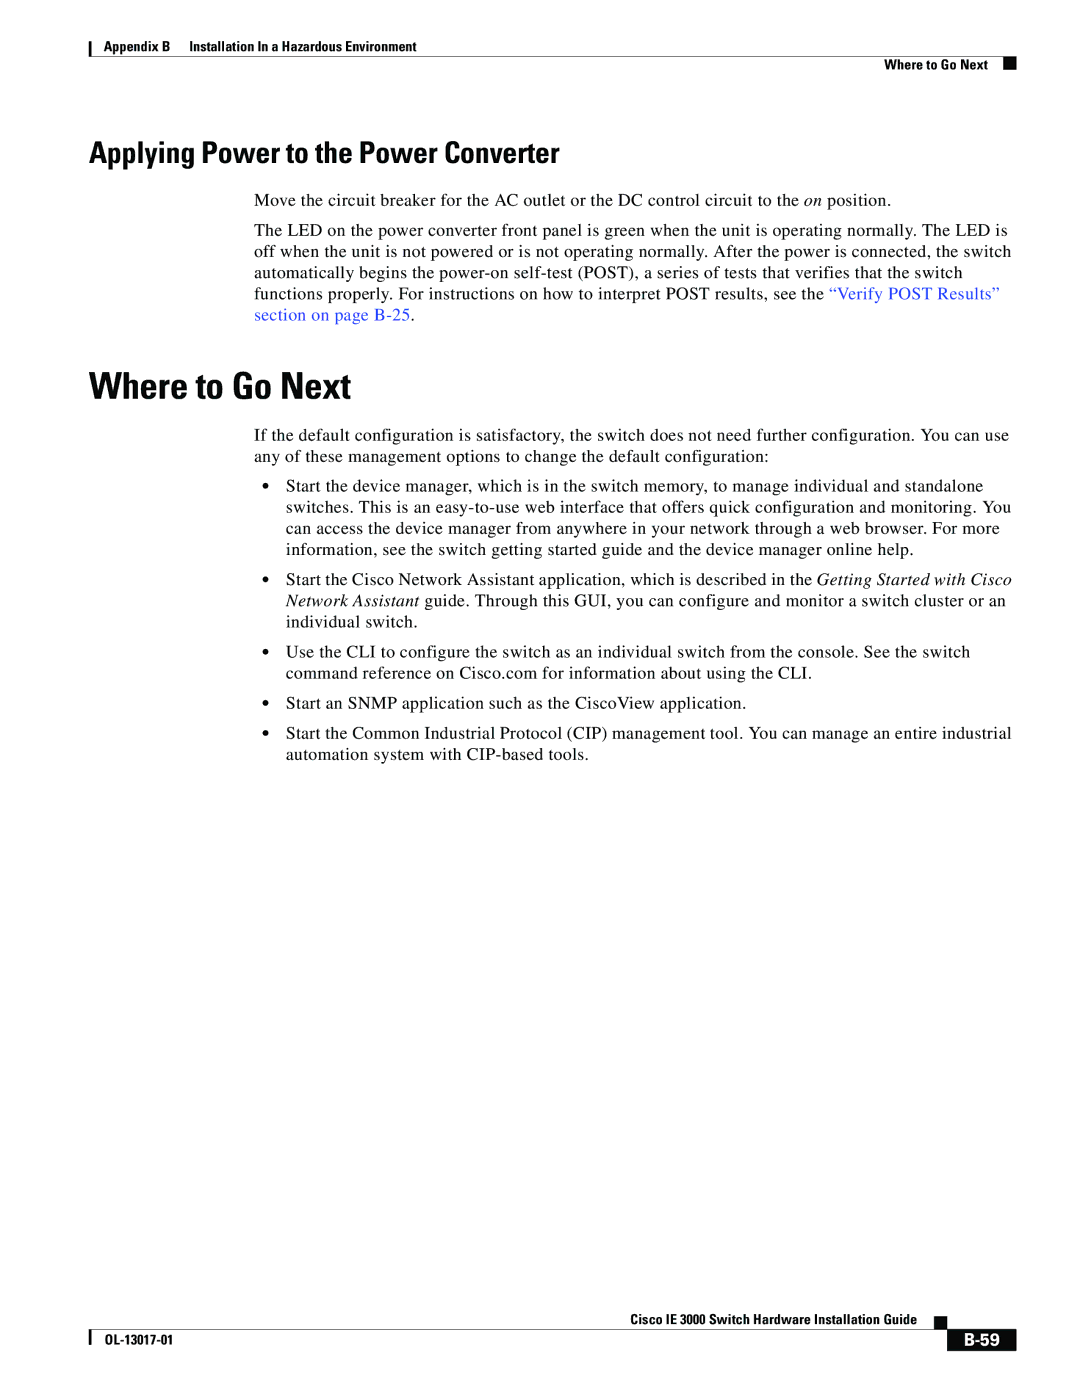 Cisco Systems IE 3000 Series, IEM30004PC manual Where to Go Next 